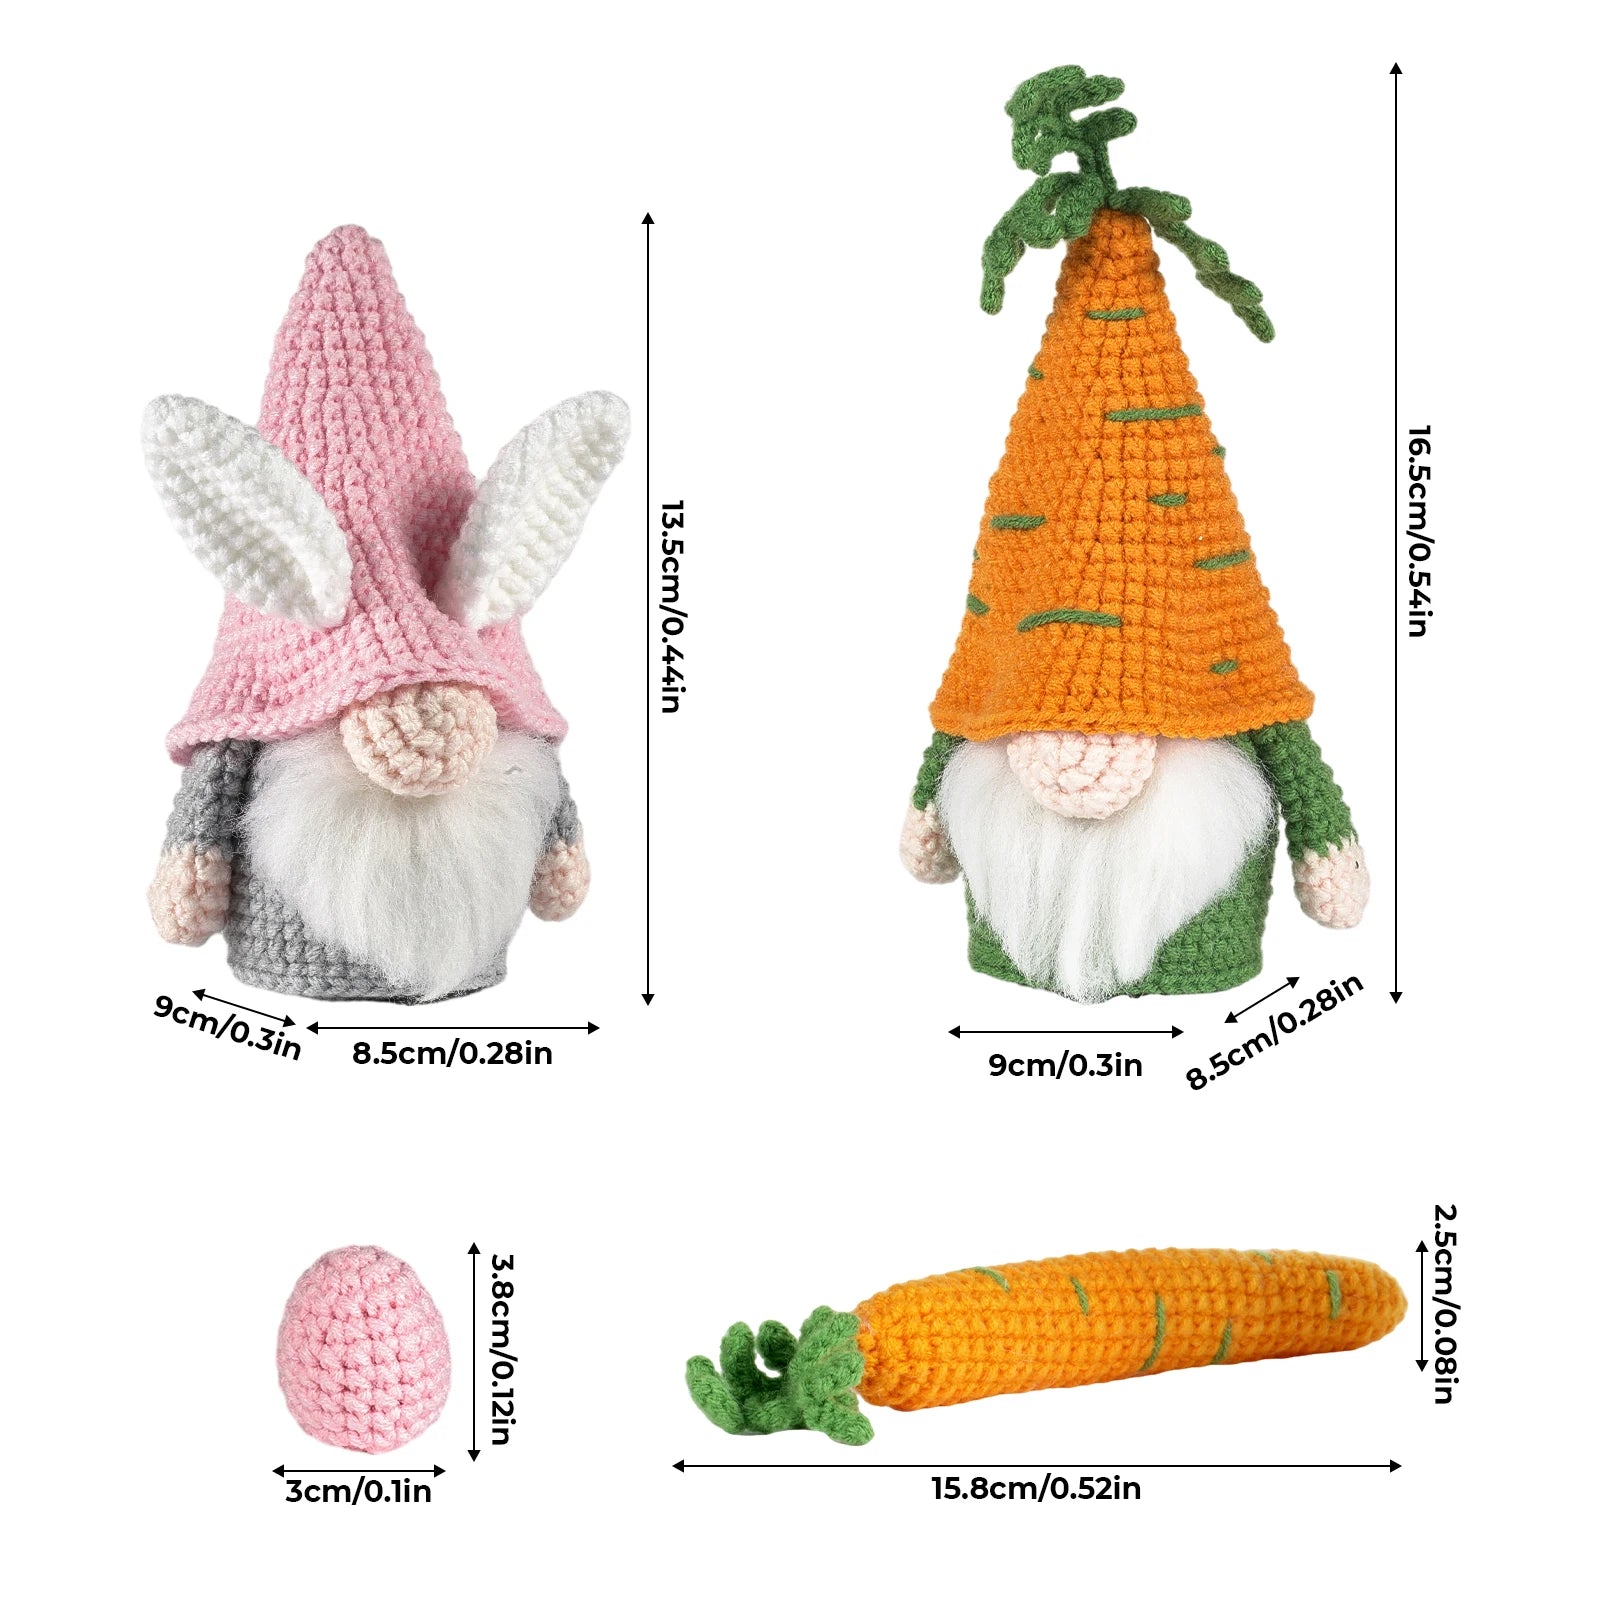 DIY Garden Gnome Crochet Starter Kit